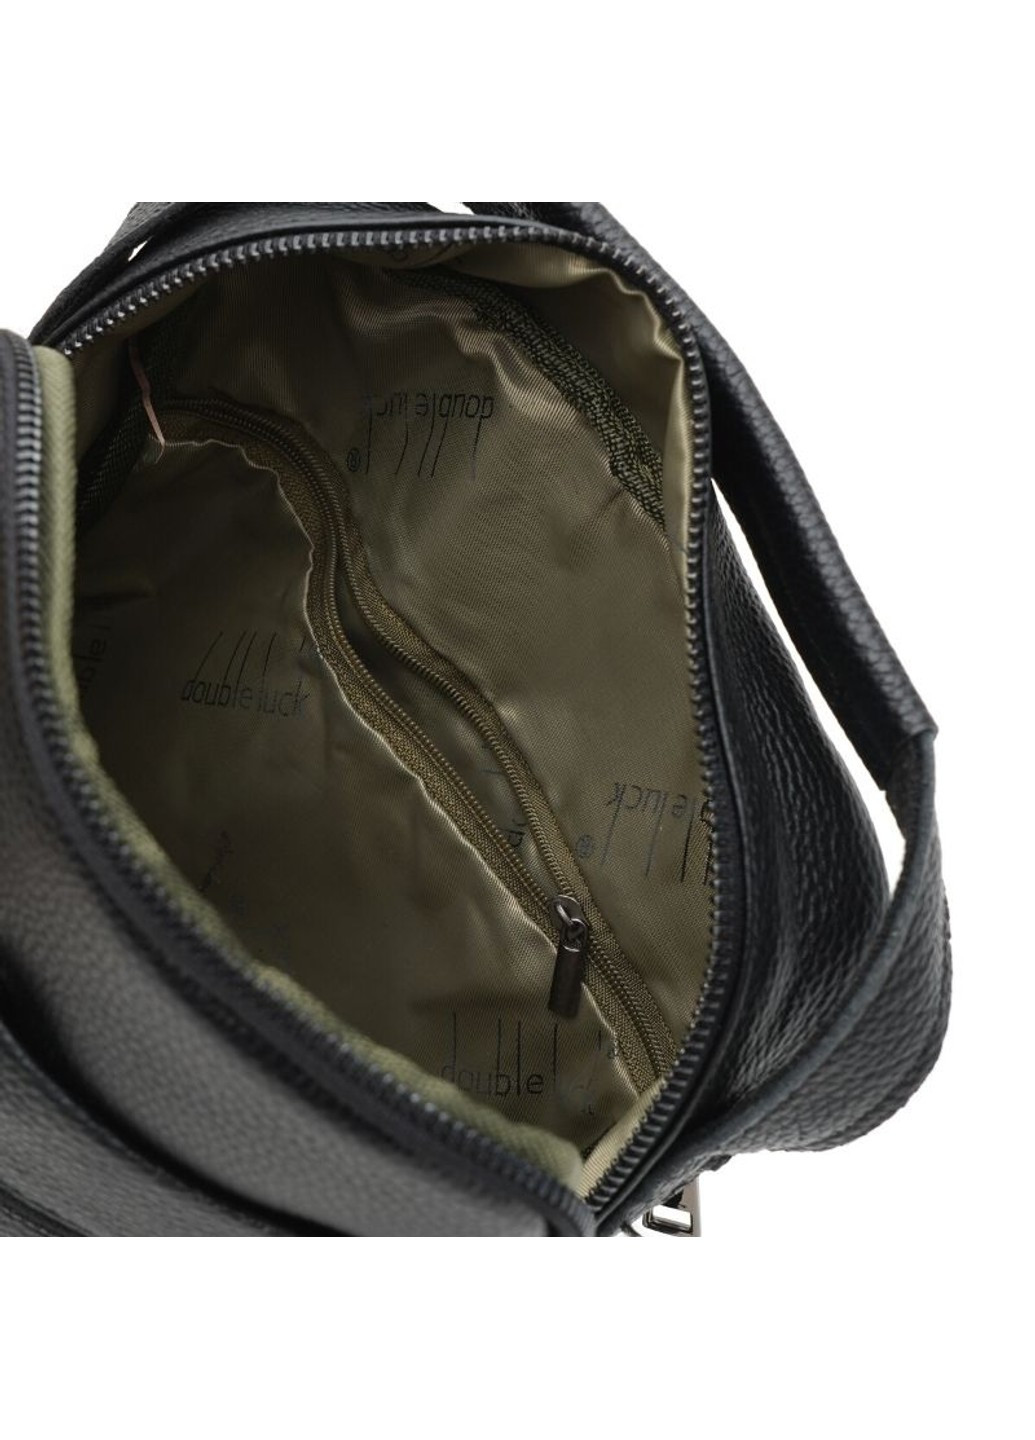 Мужская кожаная сумка k1885-black Borsa Leather (266143181)